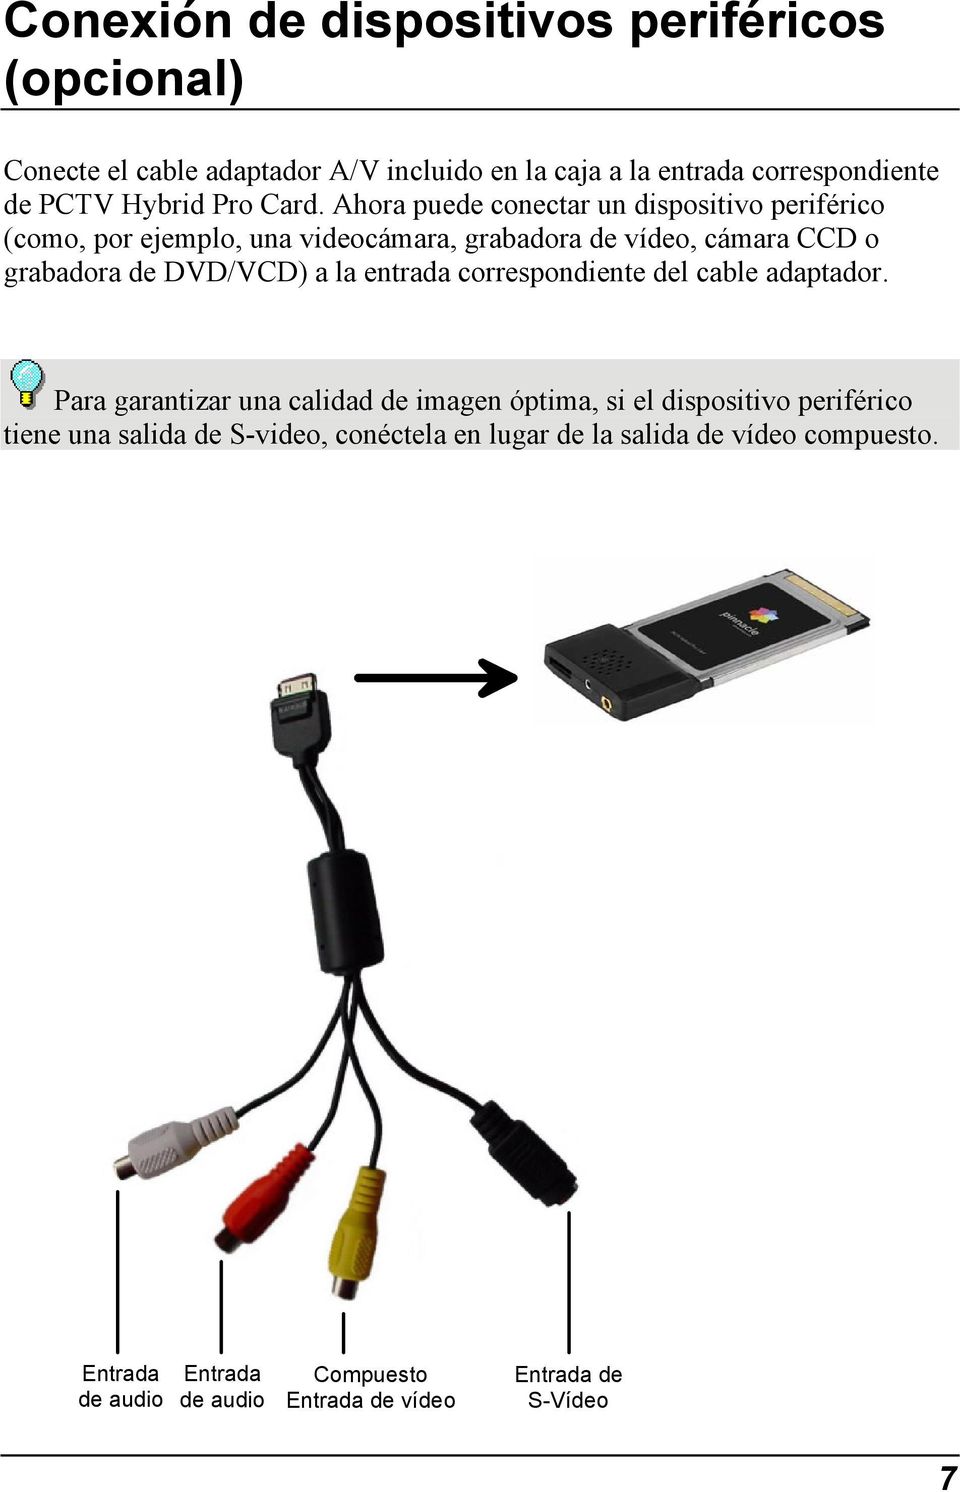 Ahora puede conectar un dispositivo periférico (como, por ejemplo, una videocámara, grabadora de vídeo, cámara CCD o grabadora de DVD/VCD) a la